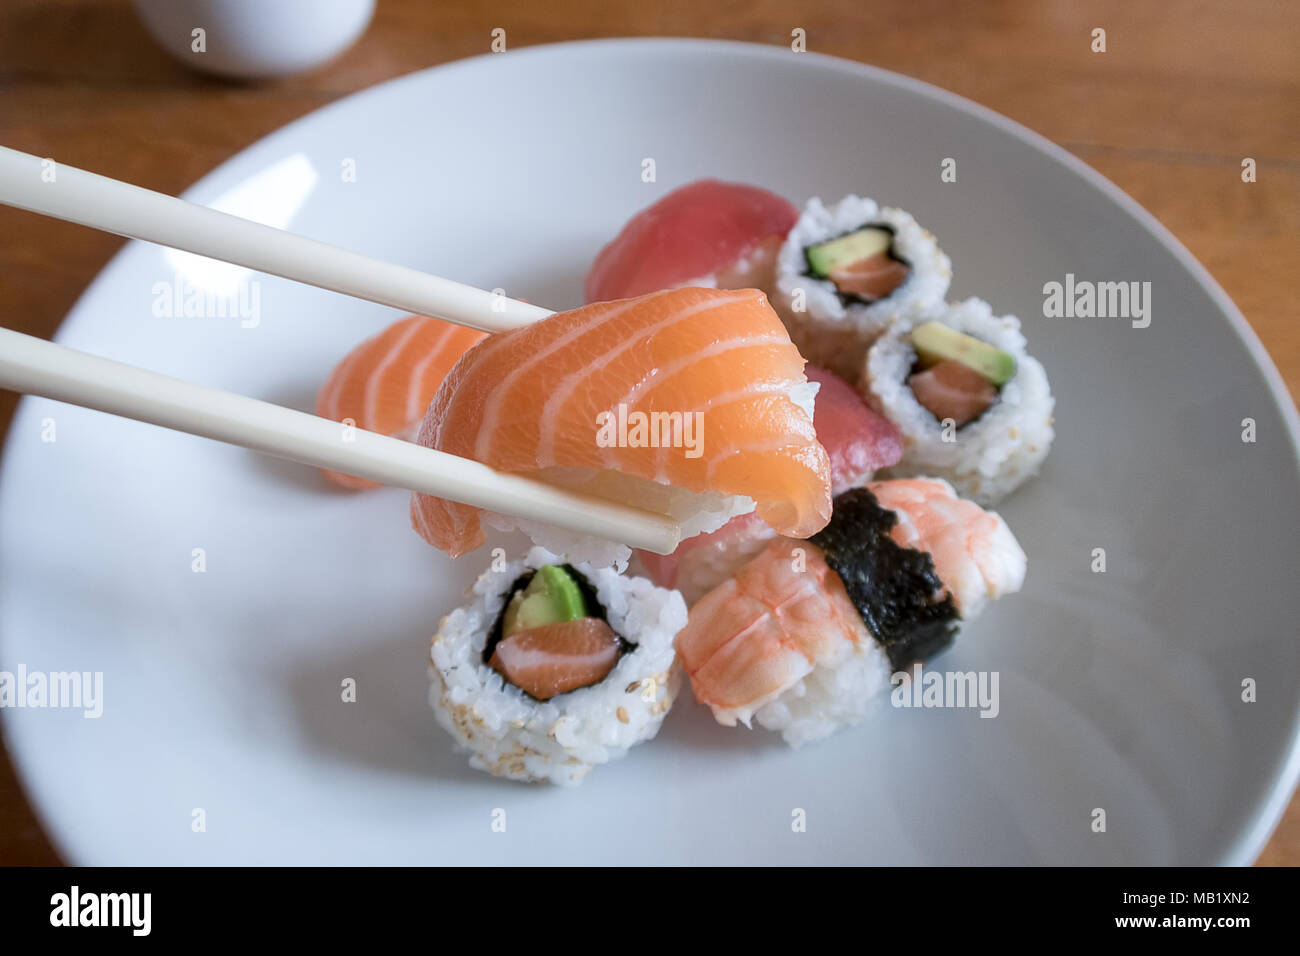 Fresh salmon nigiri sushi between chopsticks with uramaki, prawn nigiri and tuna nigiri in the background Stock Photo